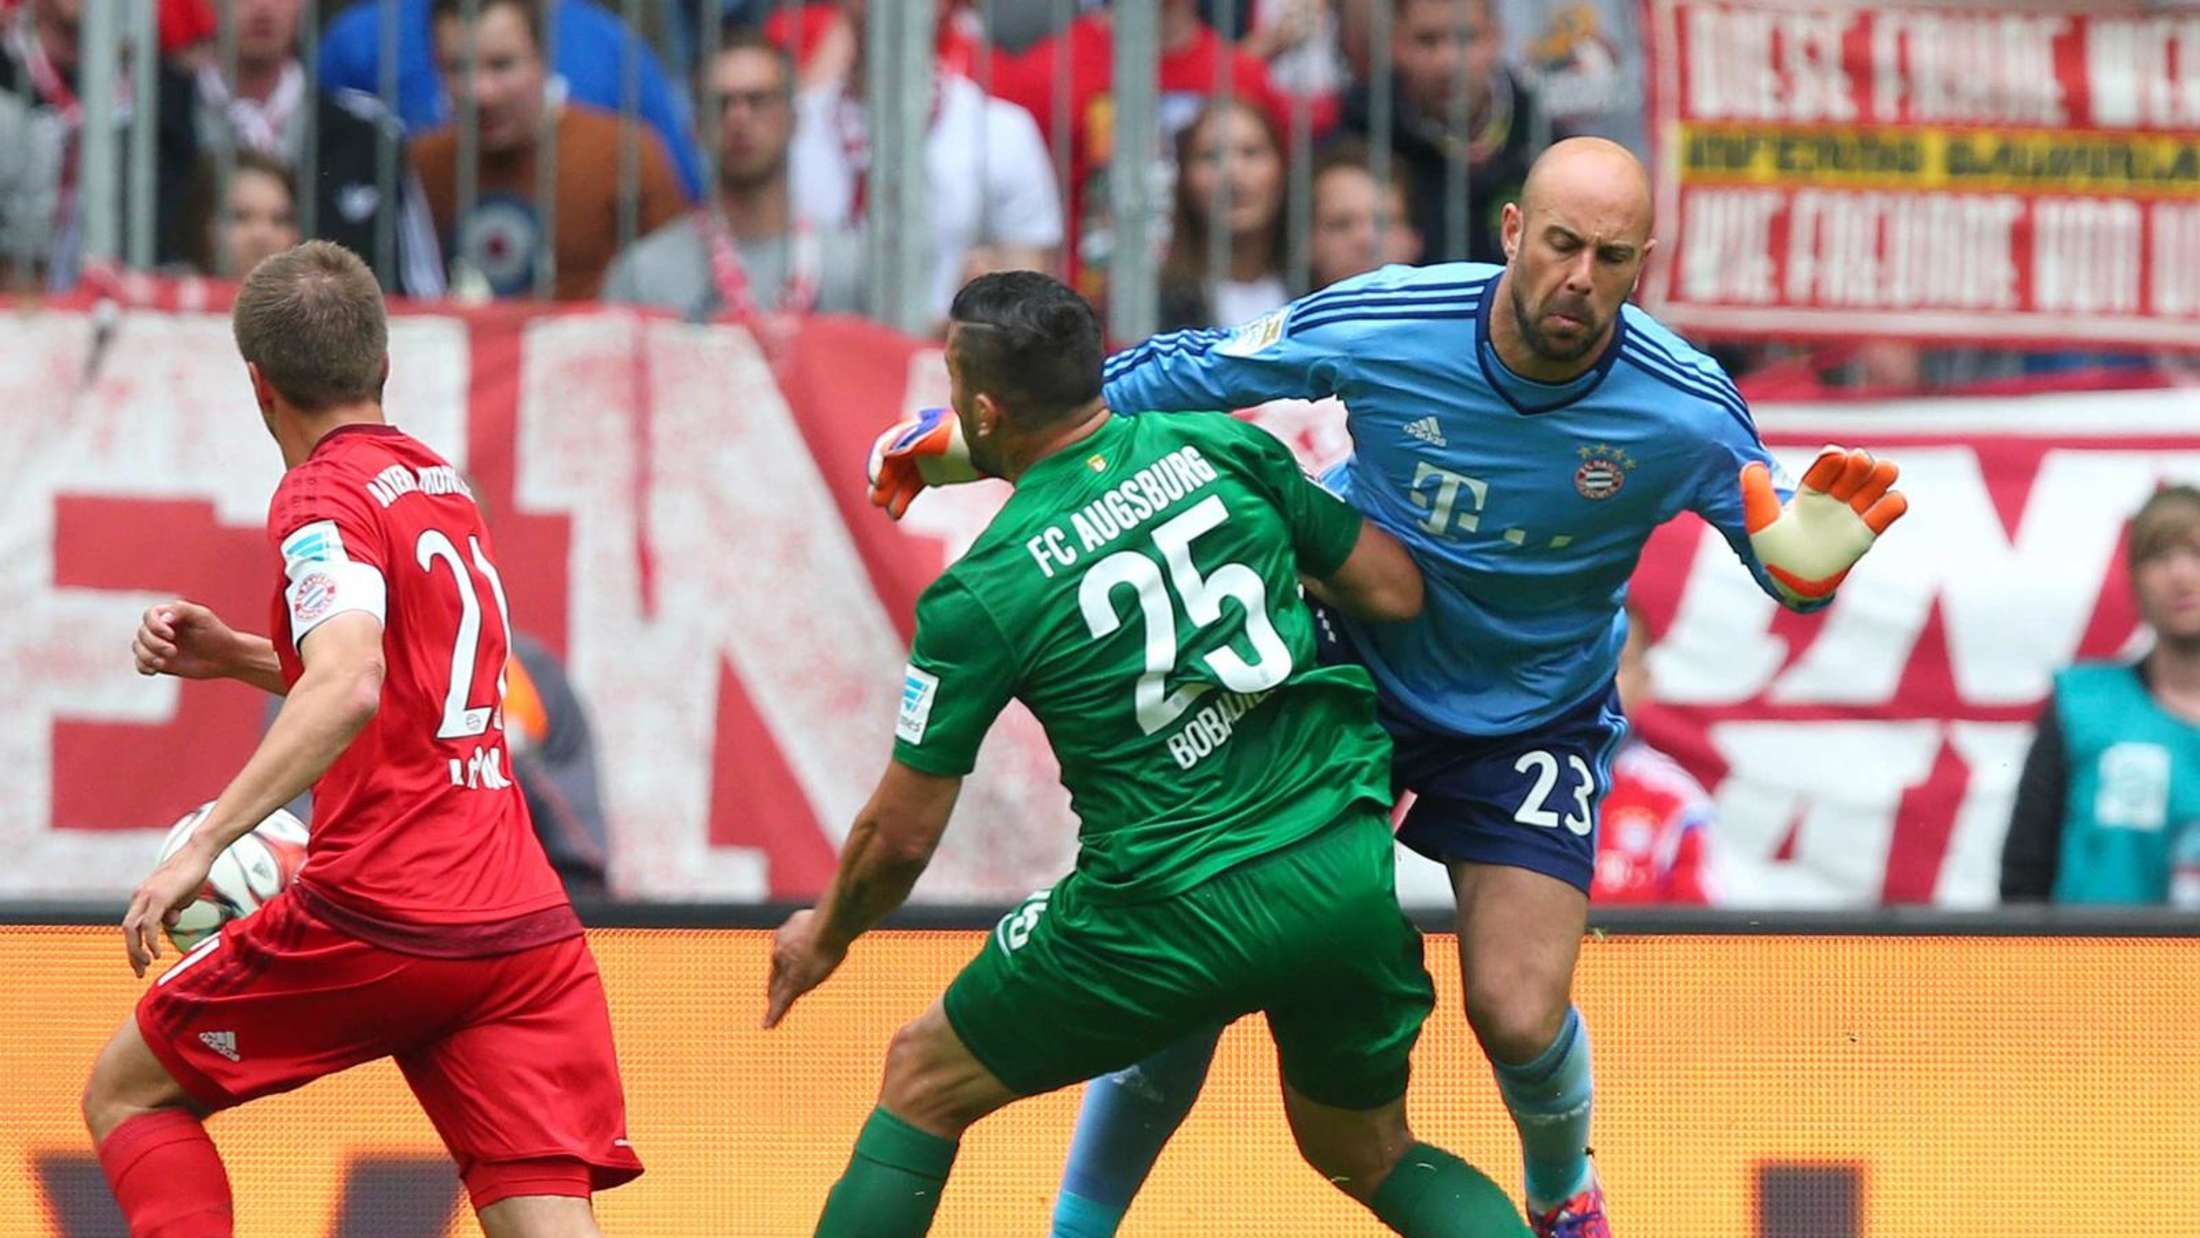 За этот фол Рейна получил красную карточку и удаление во 2-м матче в Бундеслиге